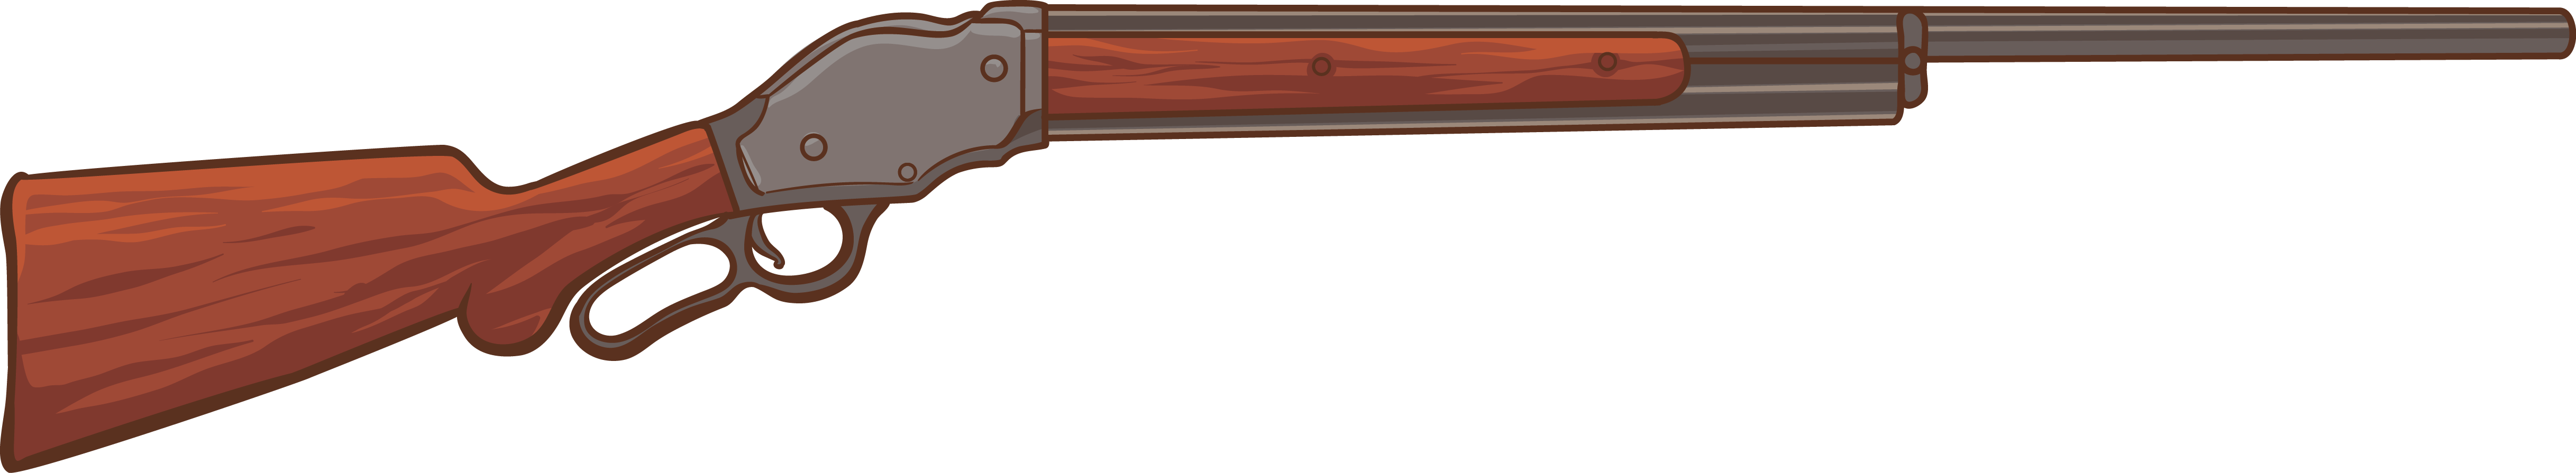 Lever Action Shotgun 1887